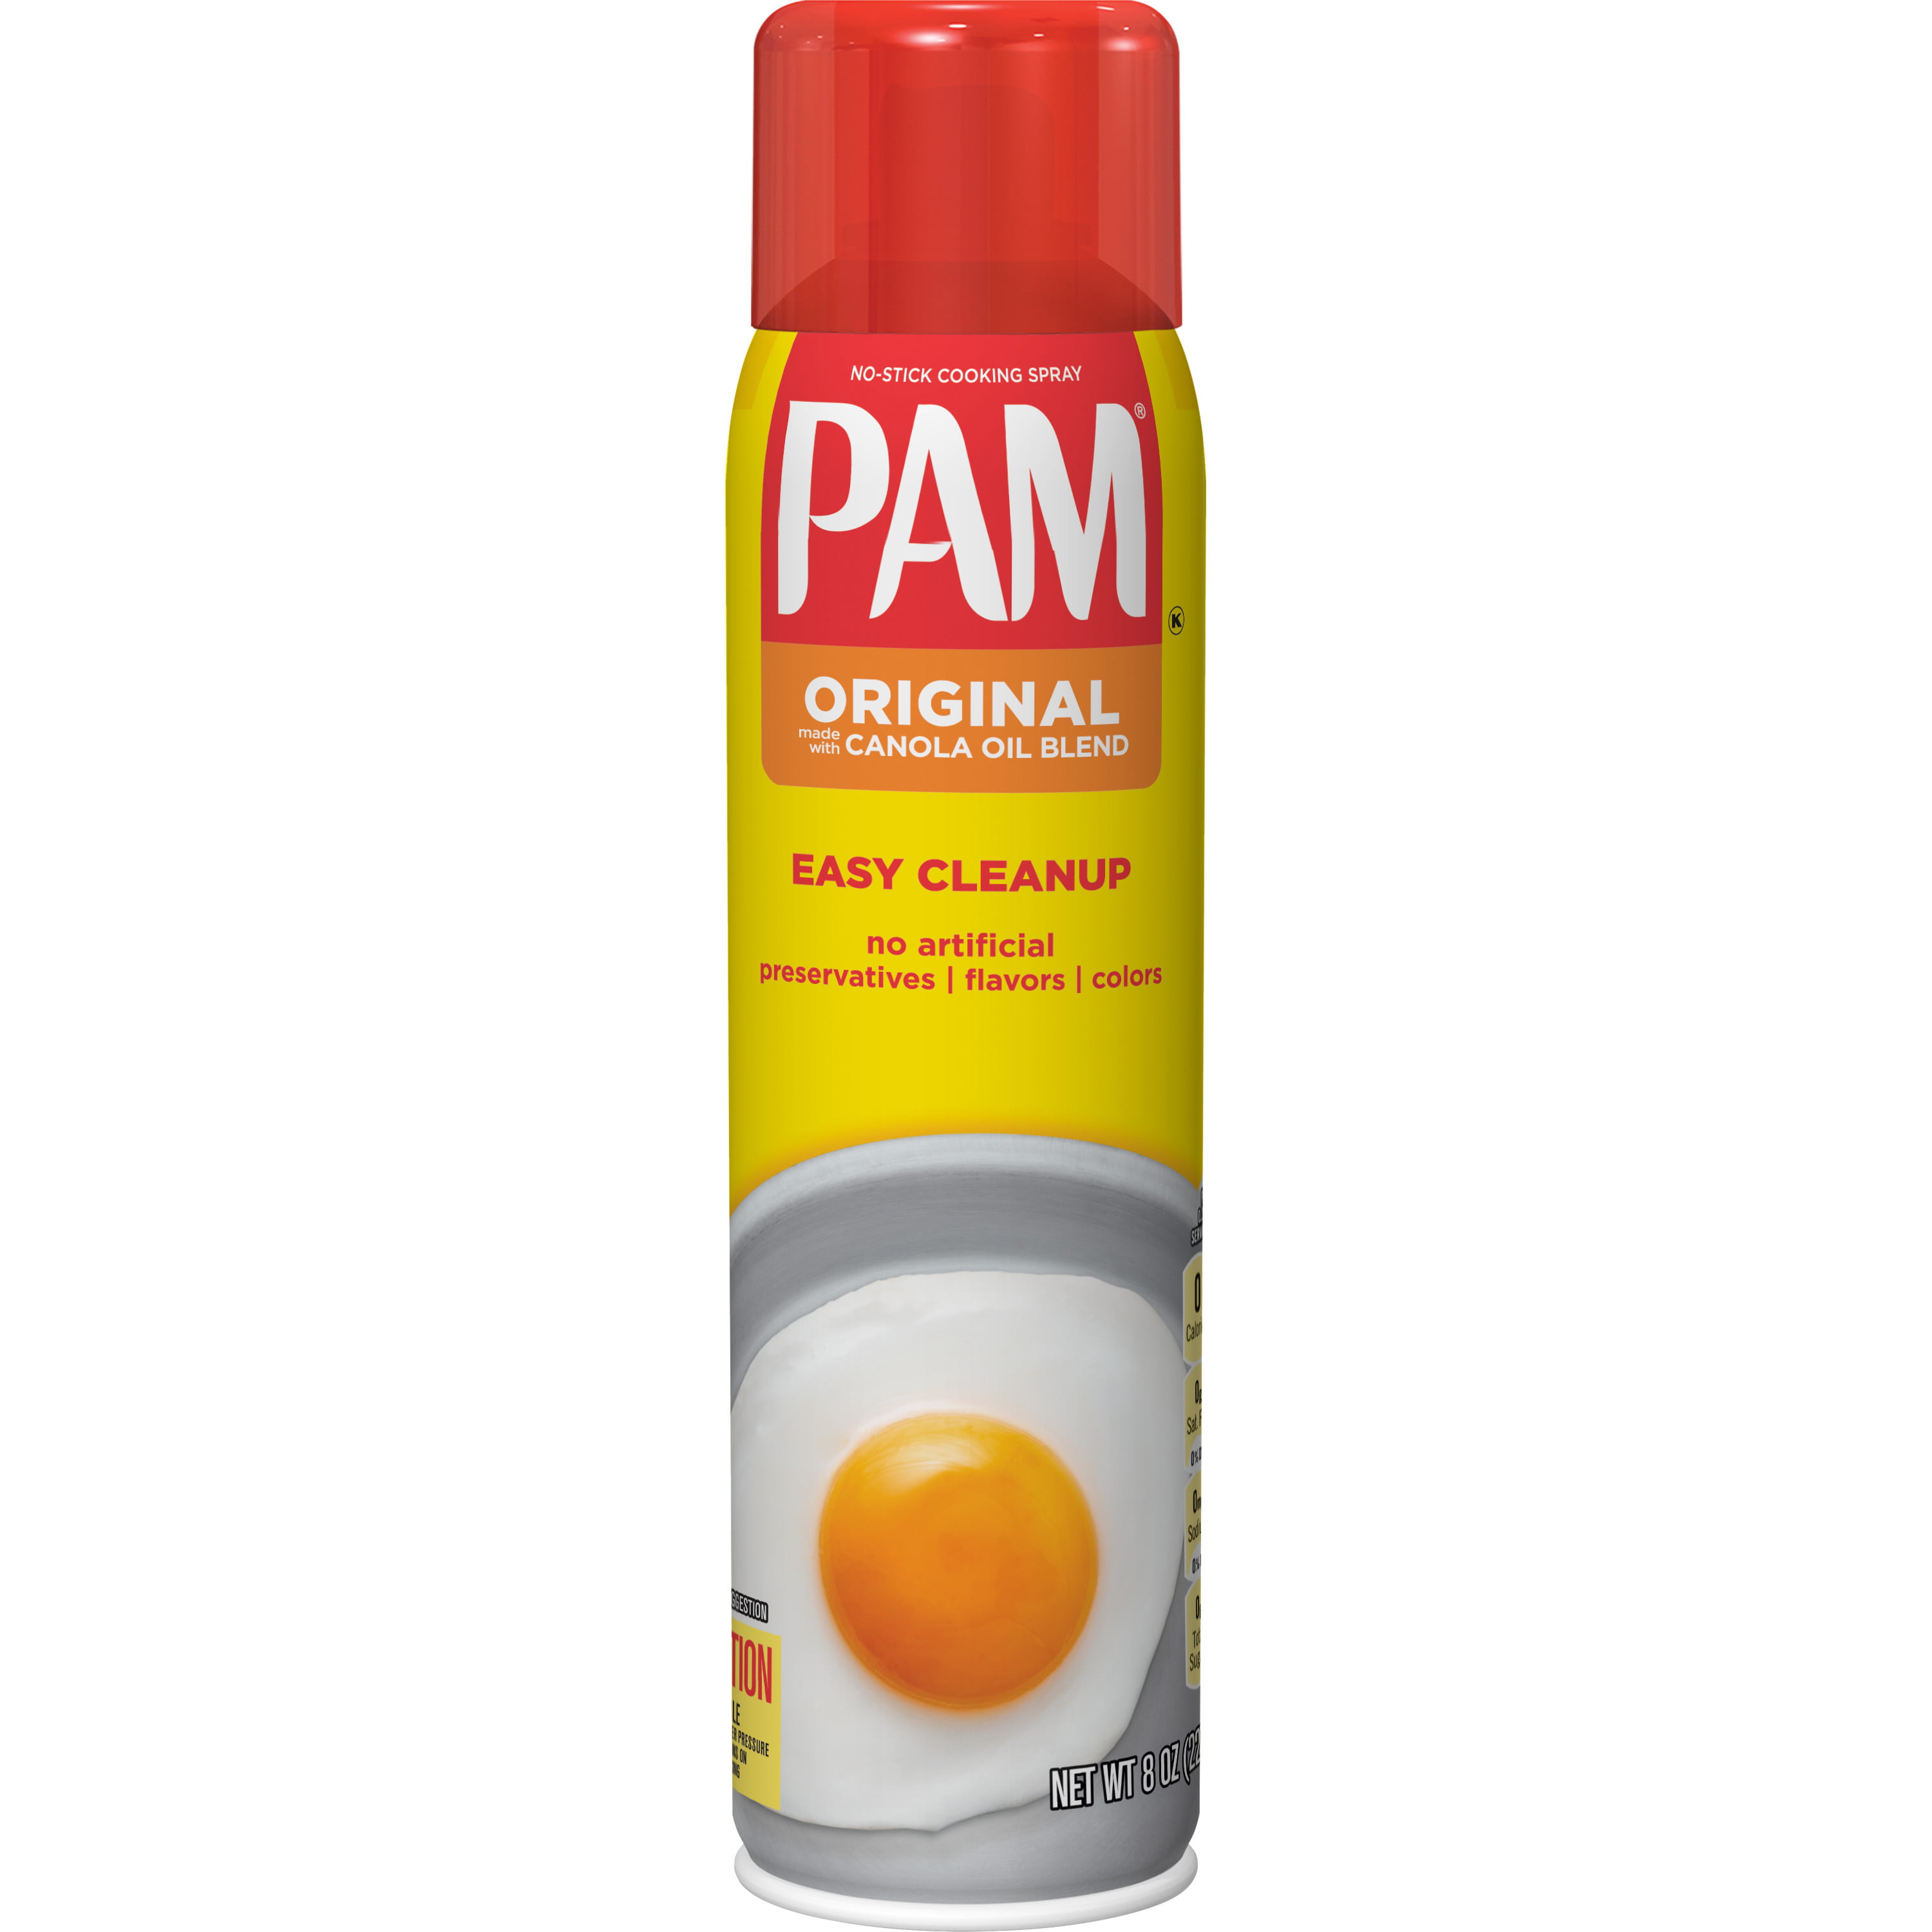 PAM 100% Natural Fat-Free Original Canola Oil Spray - 8oz.